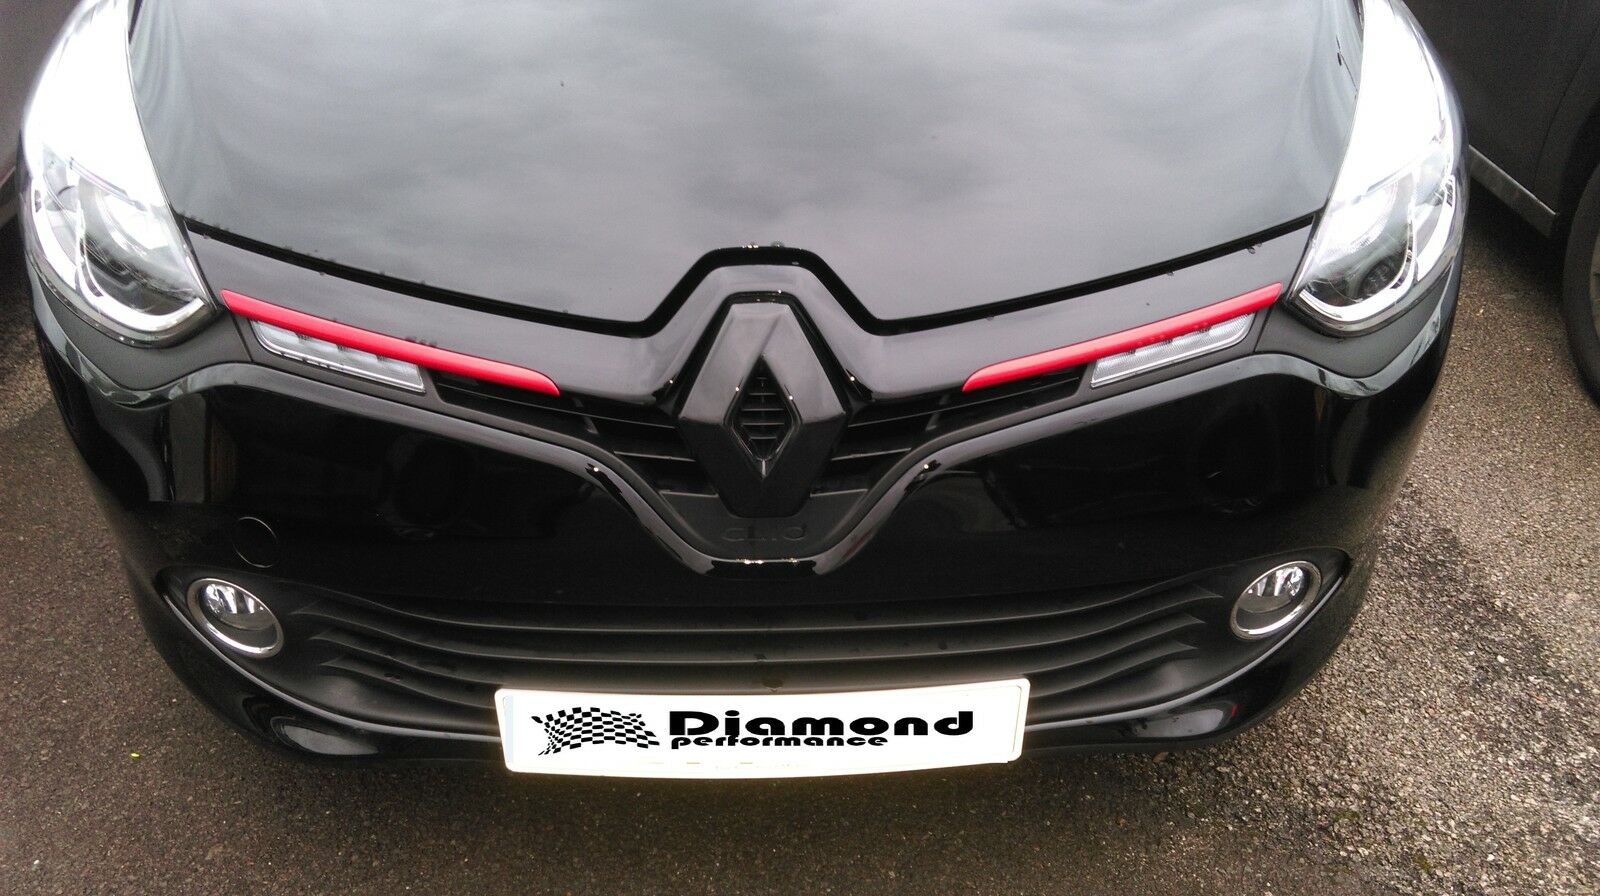 4RS2] Références Renault des monogrammes et logos noirs (idem Clio RS18 ou  option Black pack) - Clio RS Concept ®